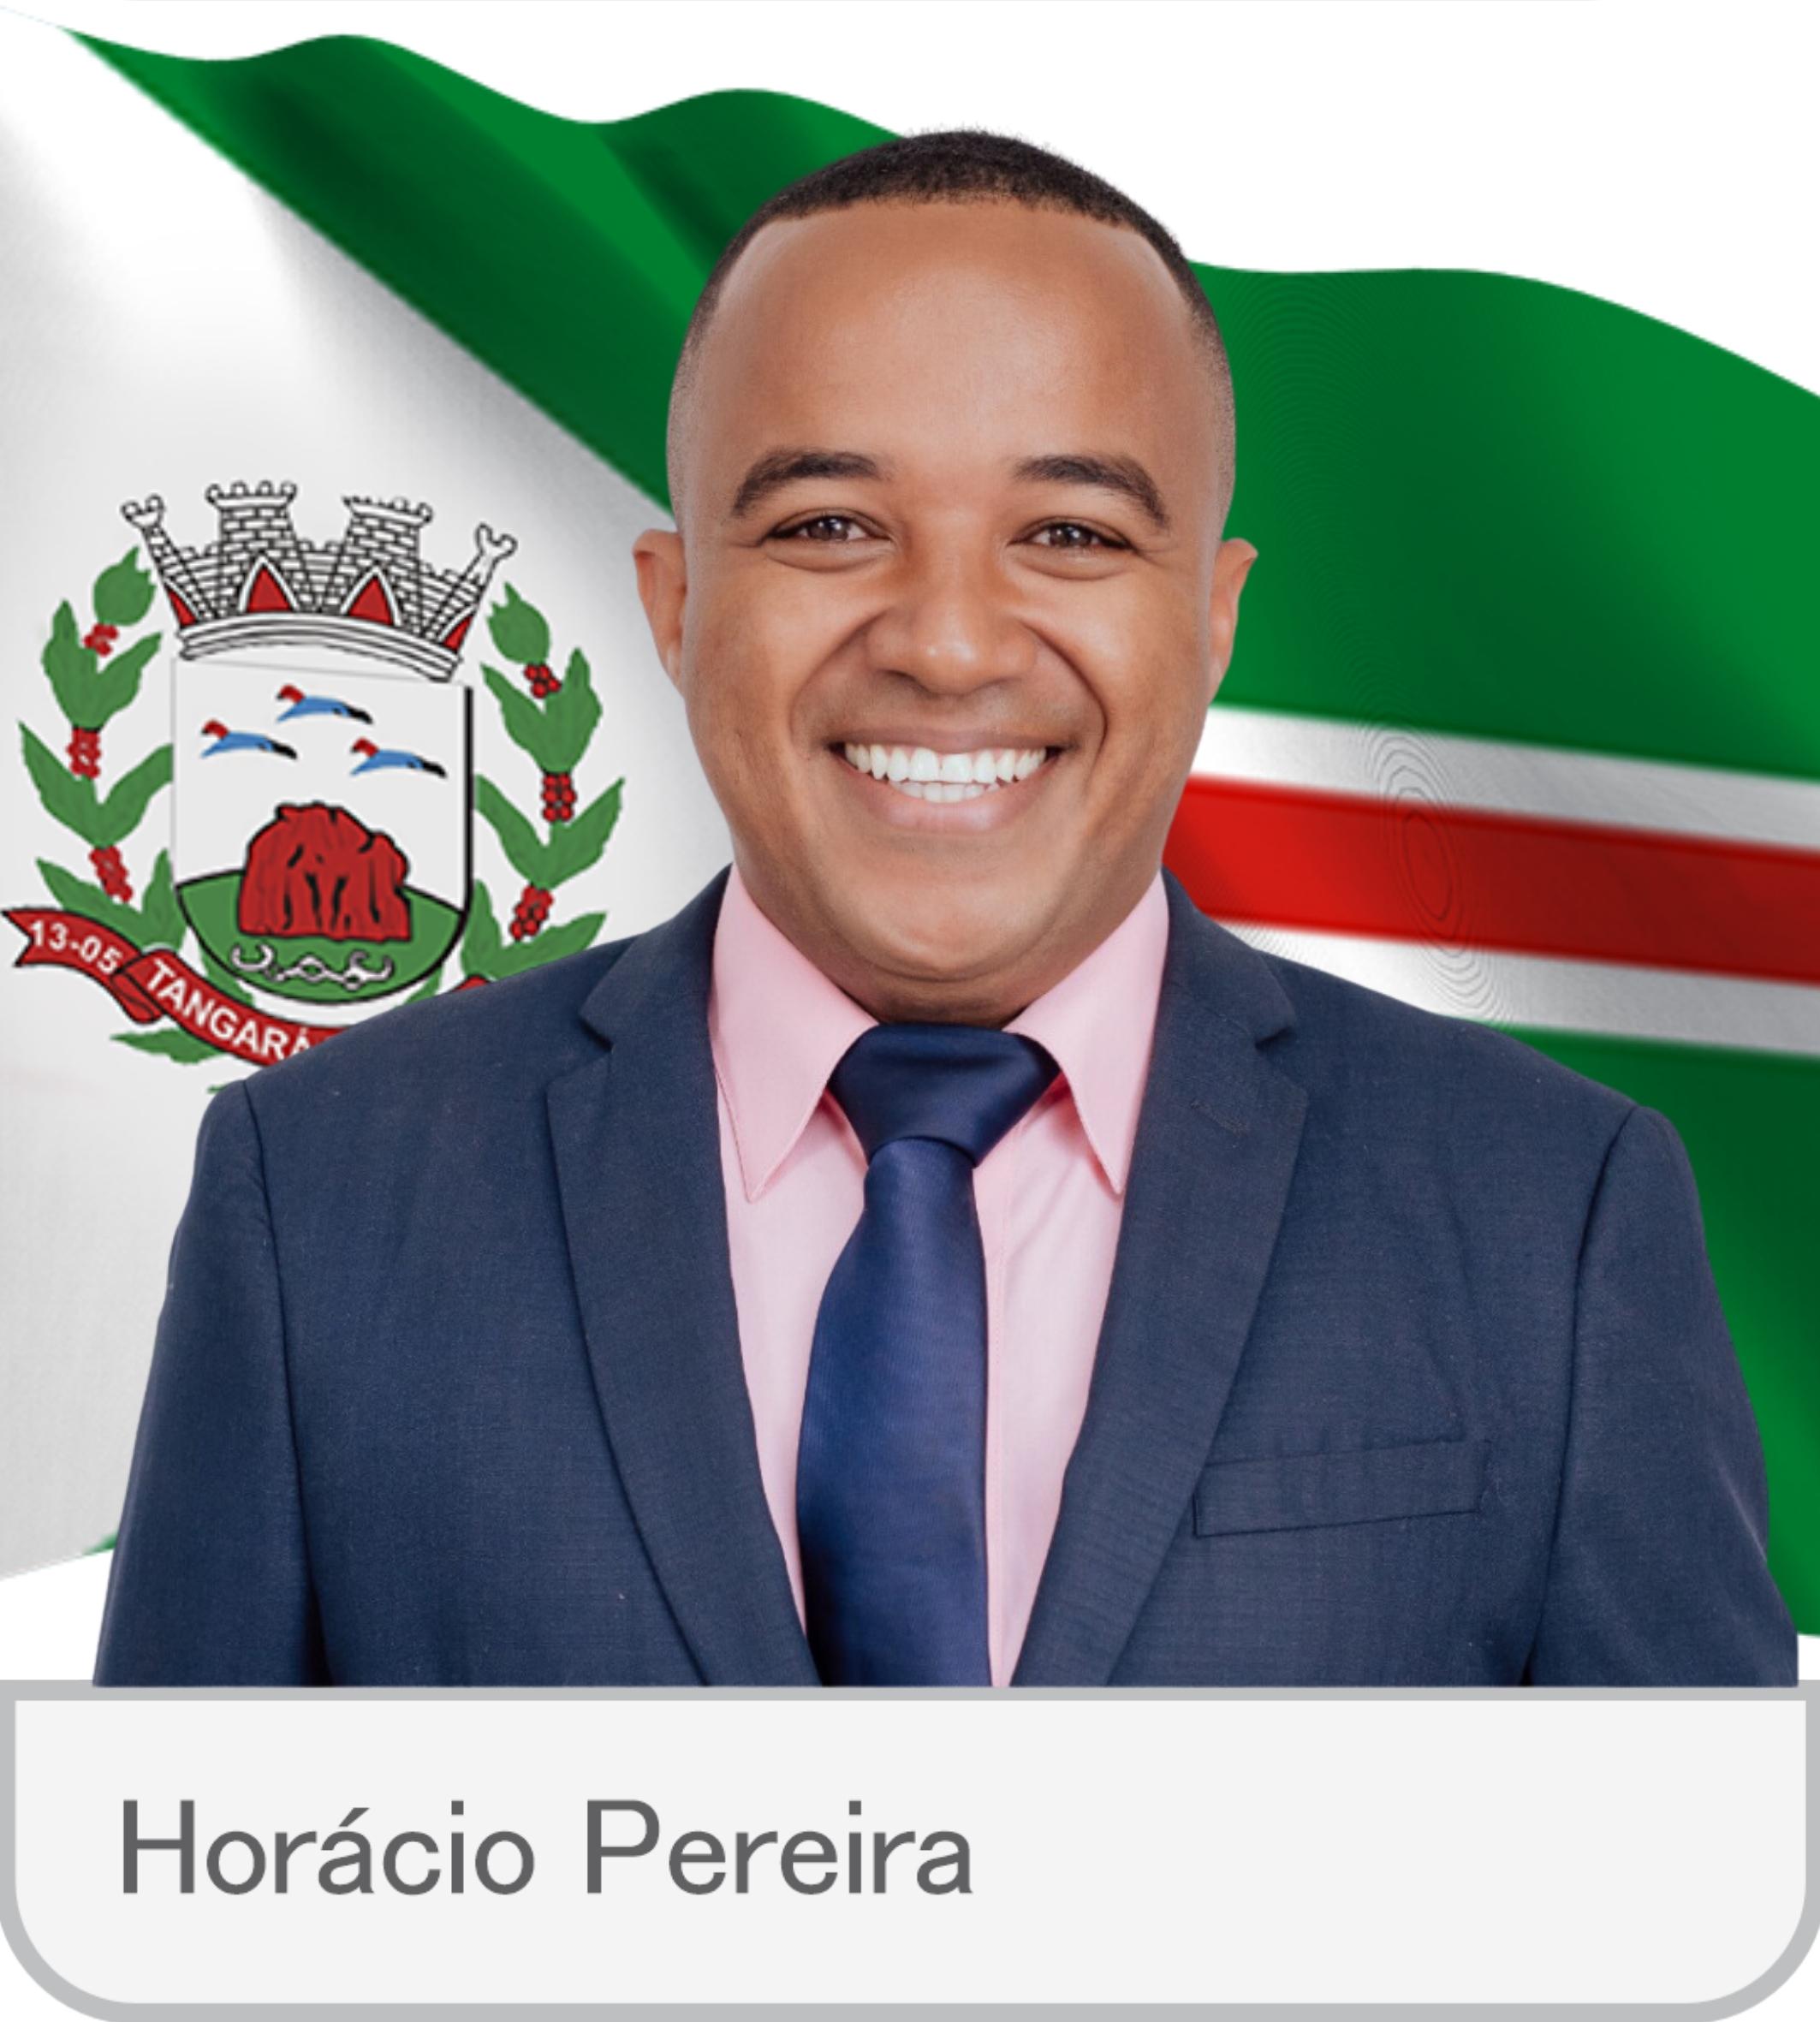 Horácio Pereira - oficial.jpg